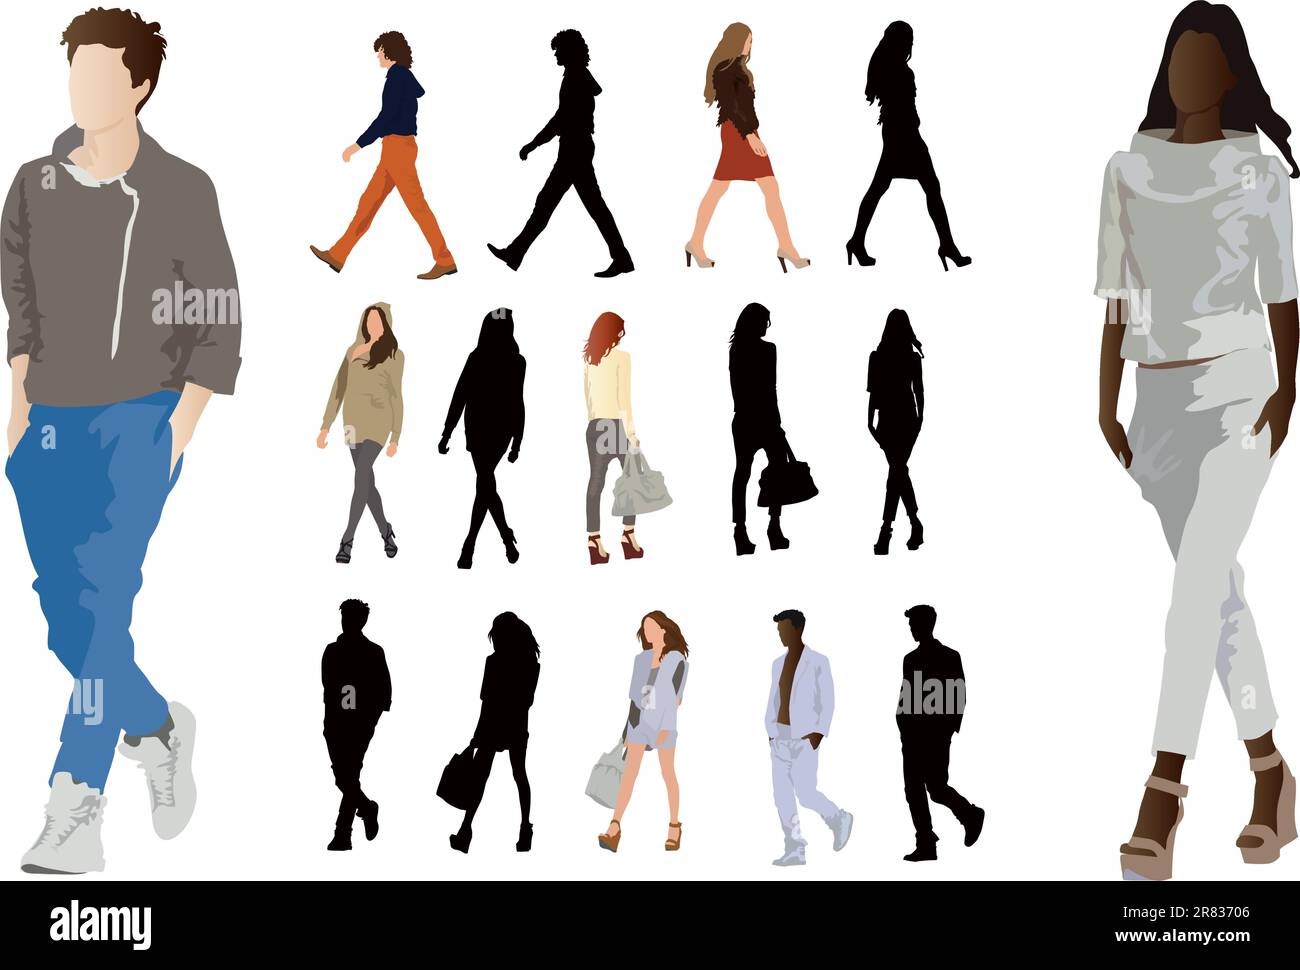 Eine Gruppe eleganter, in Mode gekleideter junger Leute. Lange Beine und perfekte Körperproportionen. Darstellung der Vektorfarbe auf Weiß. Stock Vektor